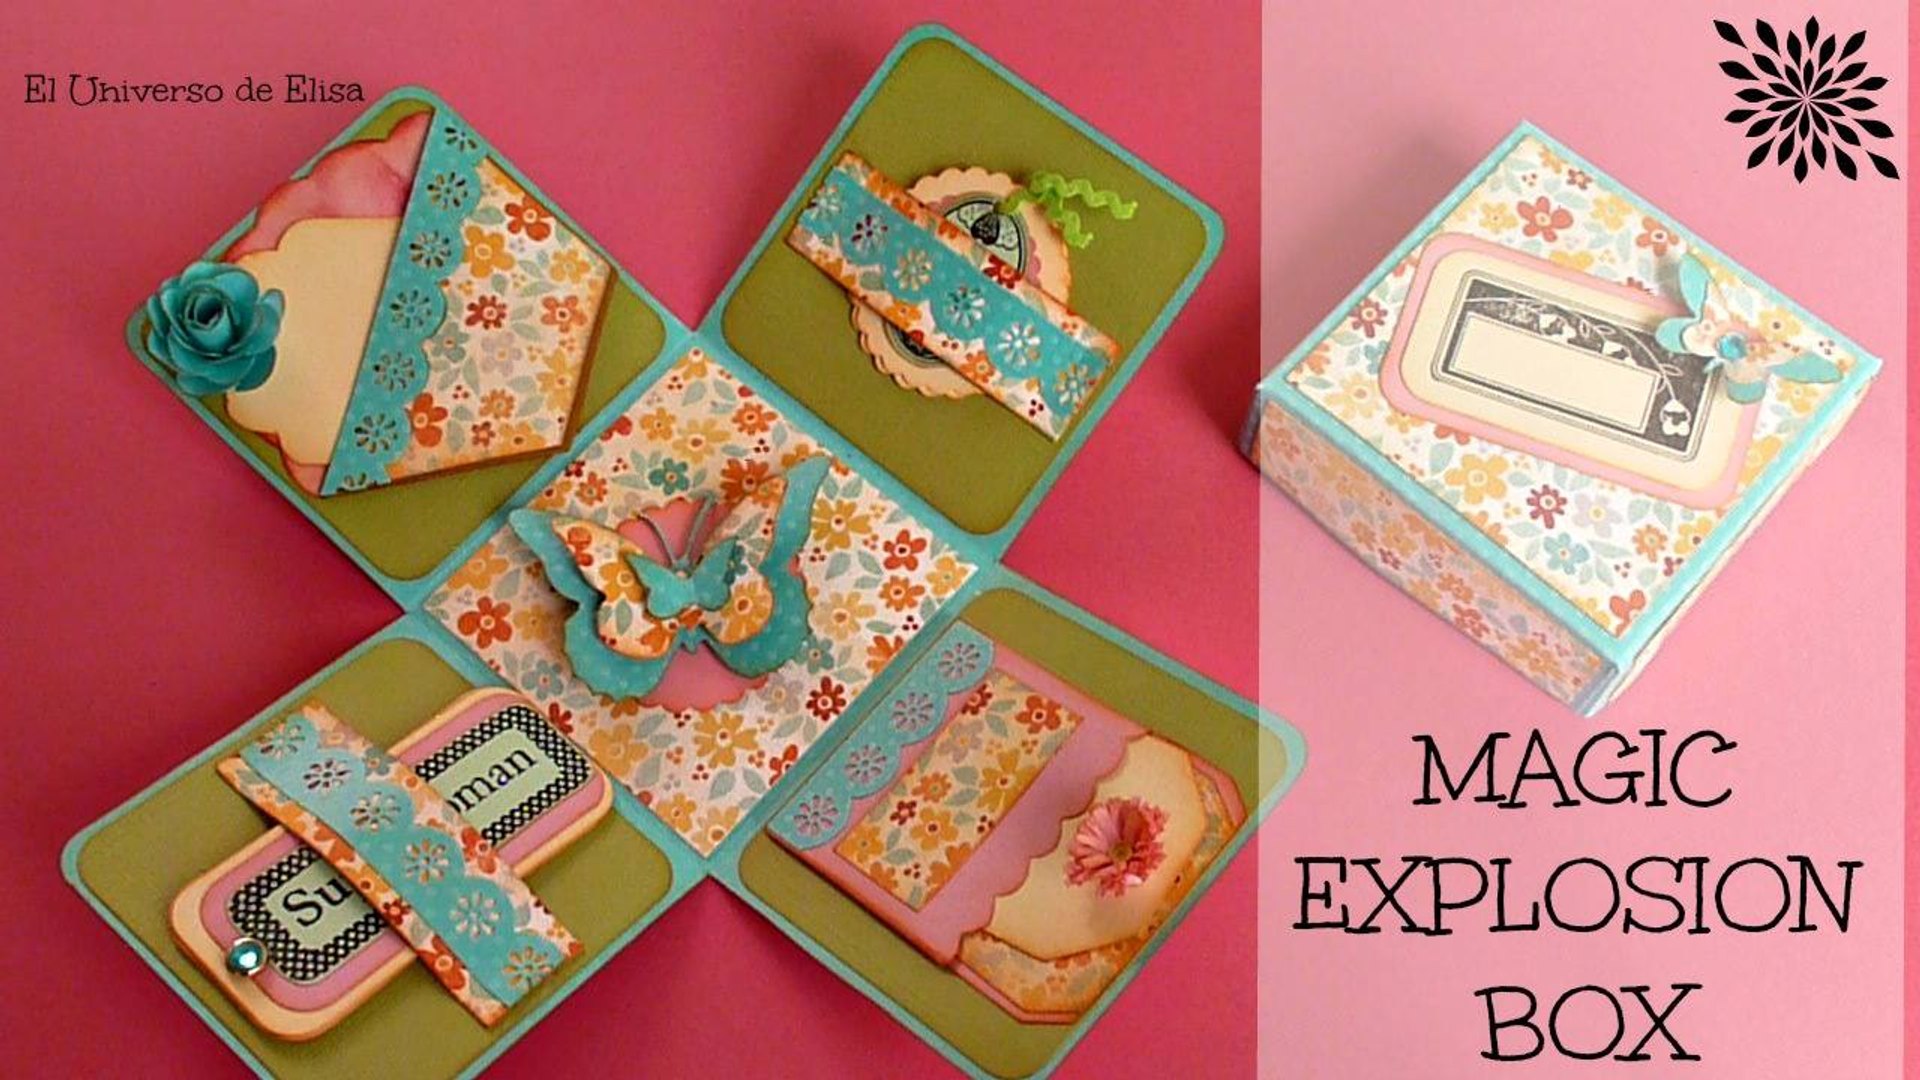 CAJA EXPLOSIVA - EXPLOSION BOX, Regalos para el Día de la Madre, Magic  Explosion Box - Vídeo Dailymotion